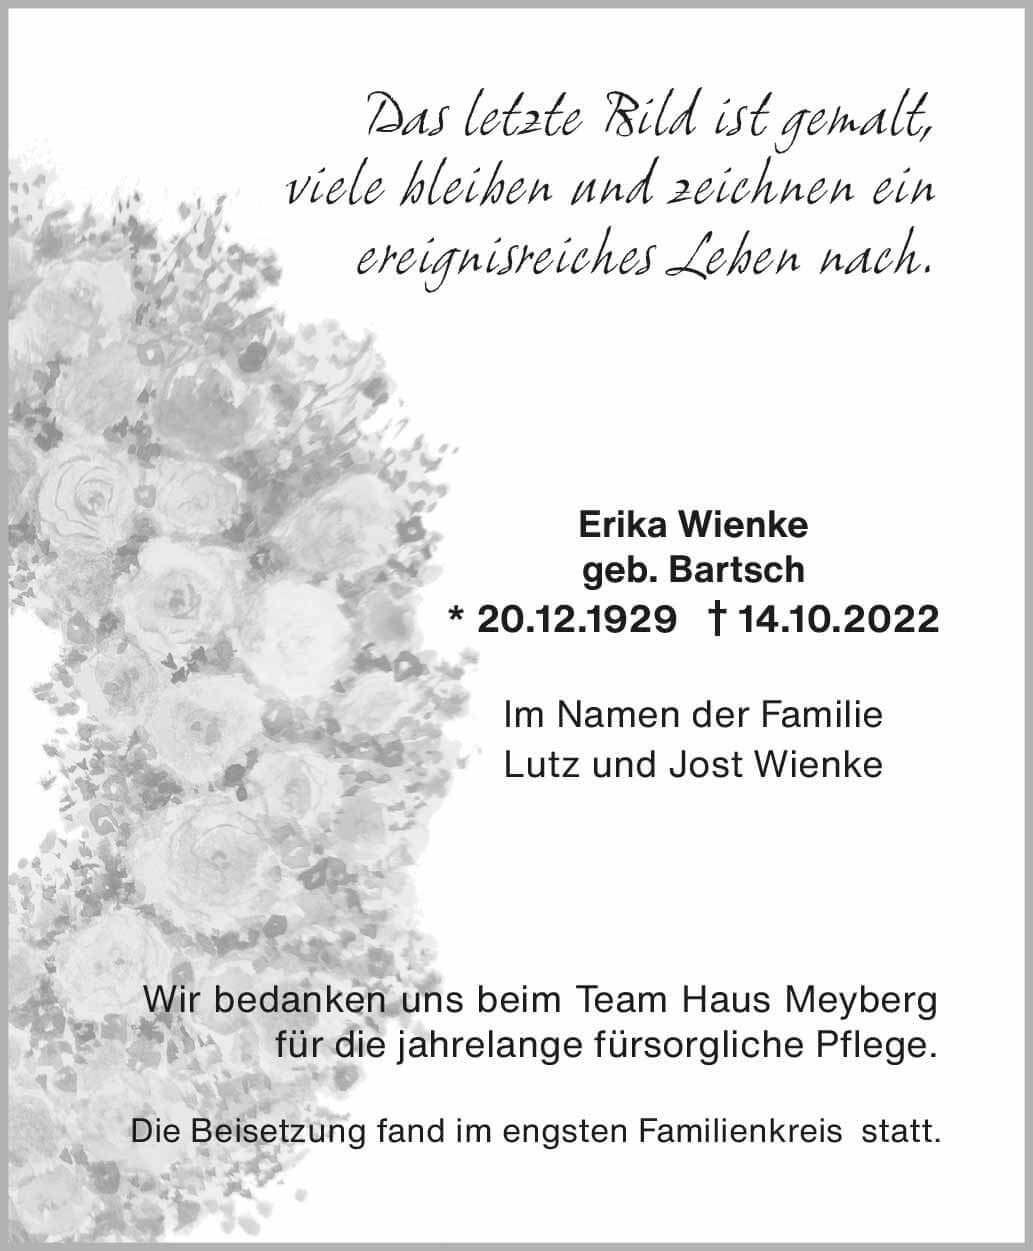 Erika Wienke † 14. 10. 2022